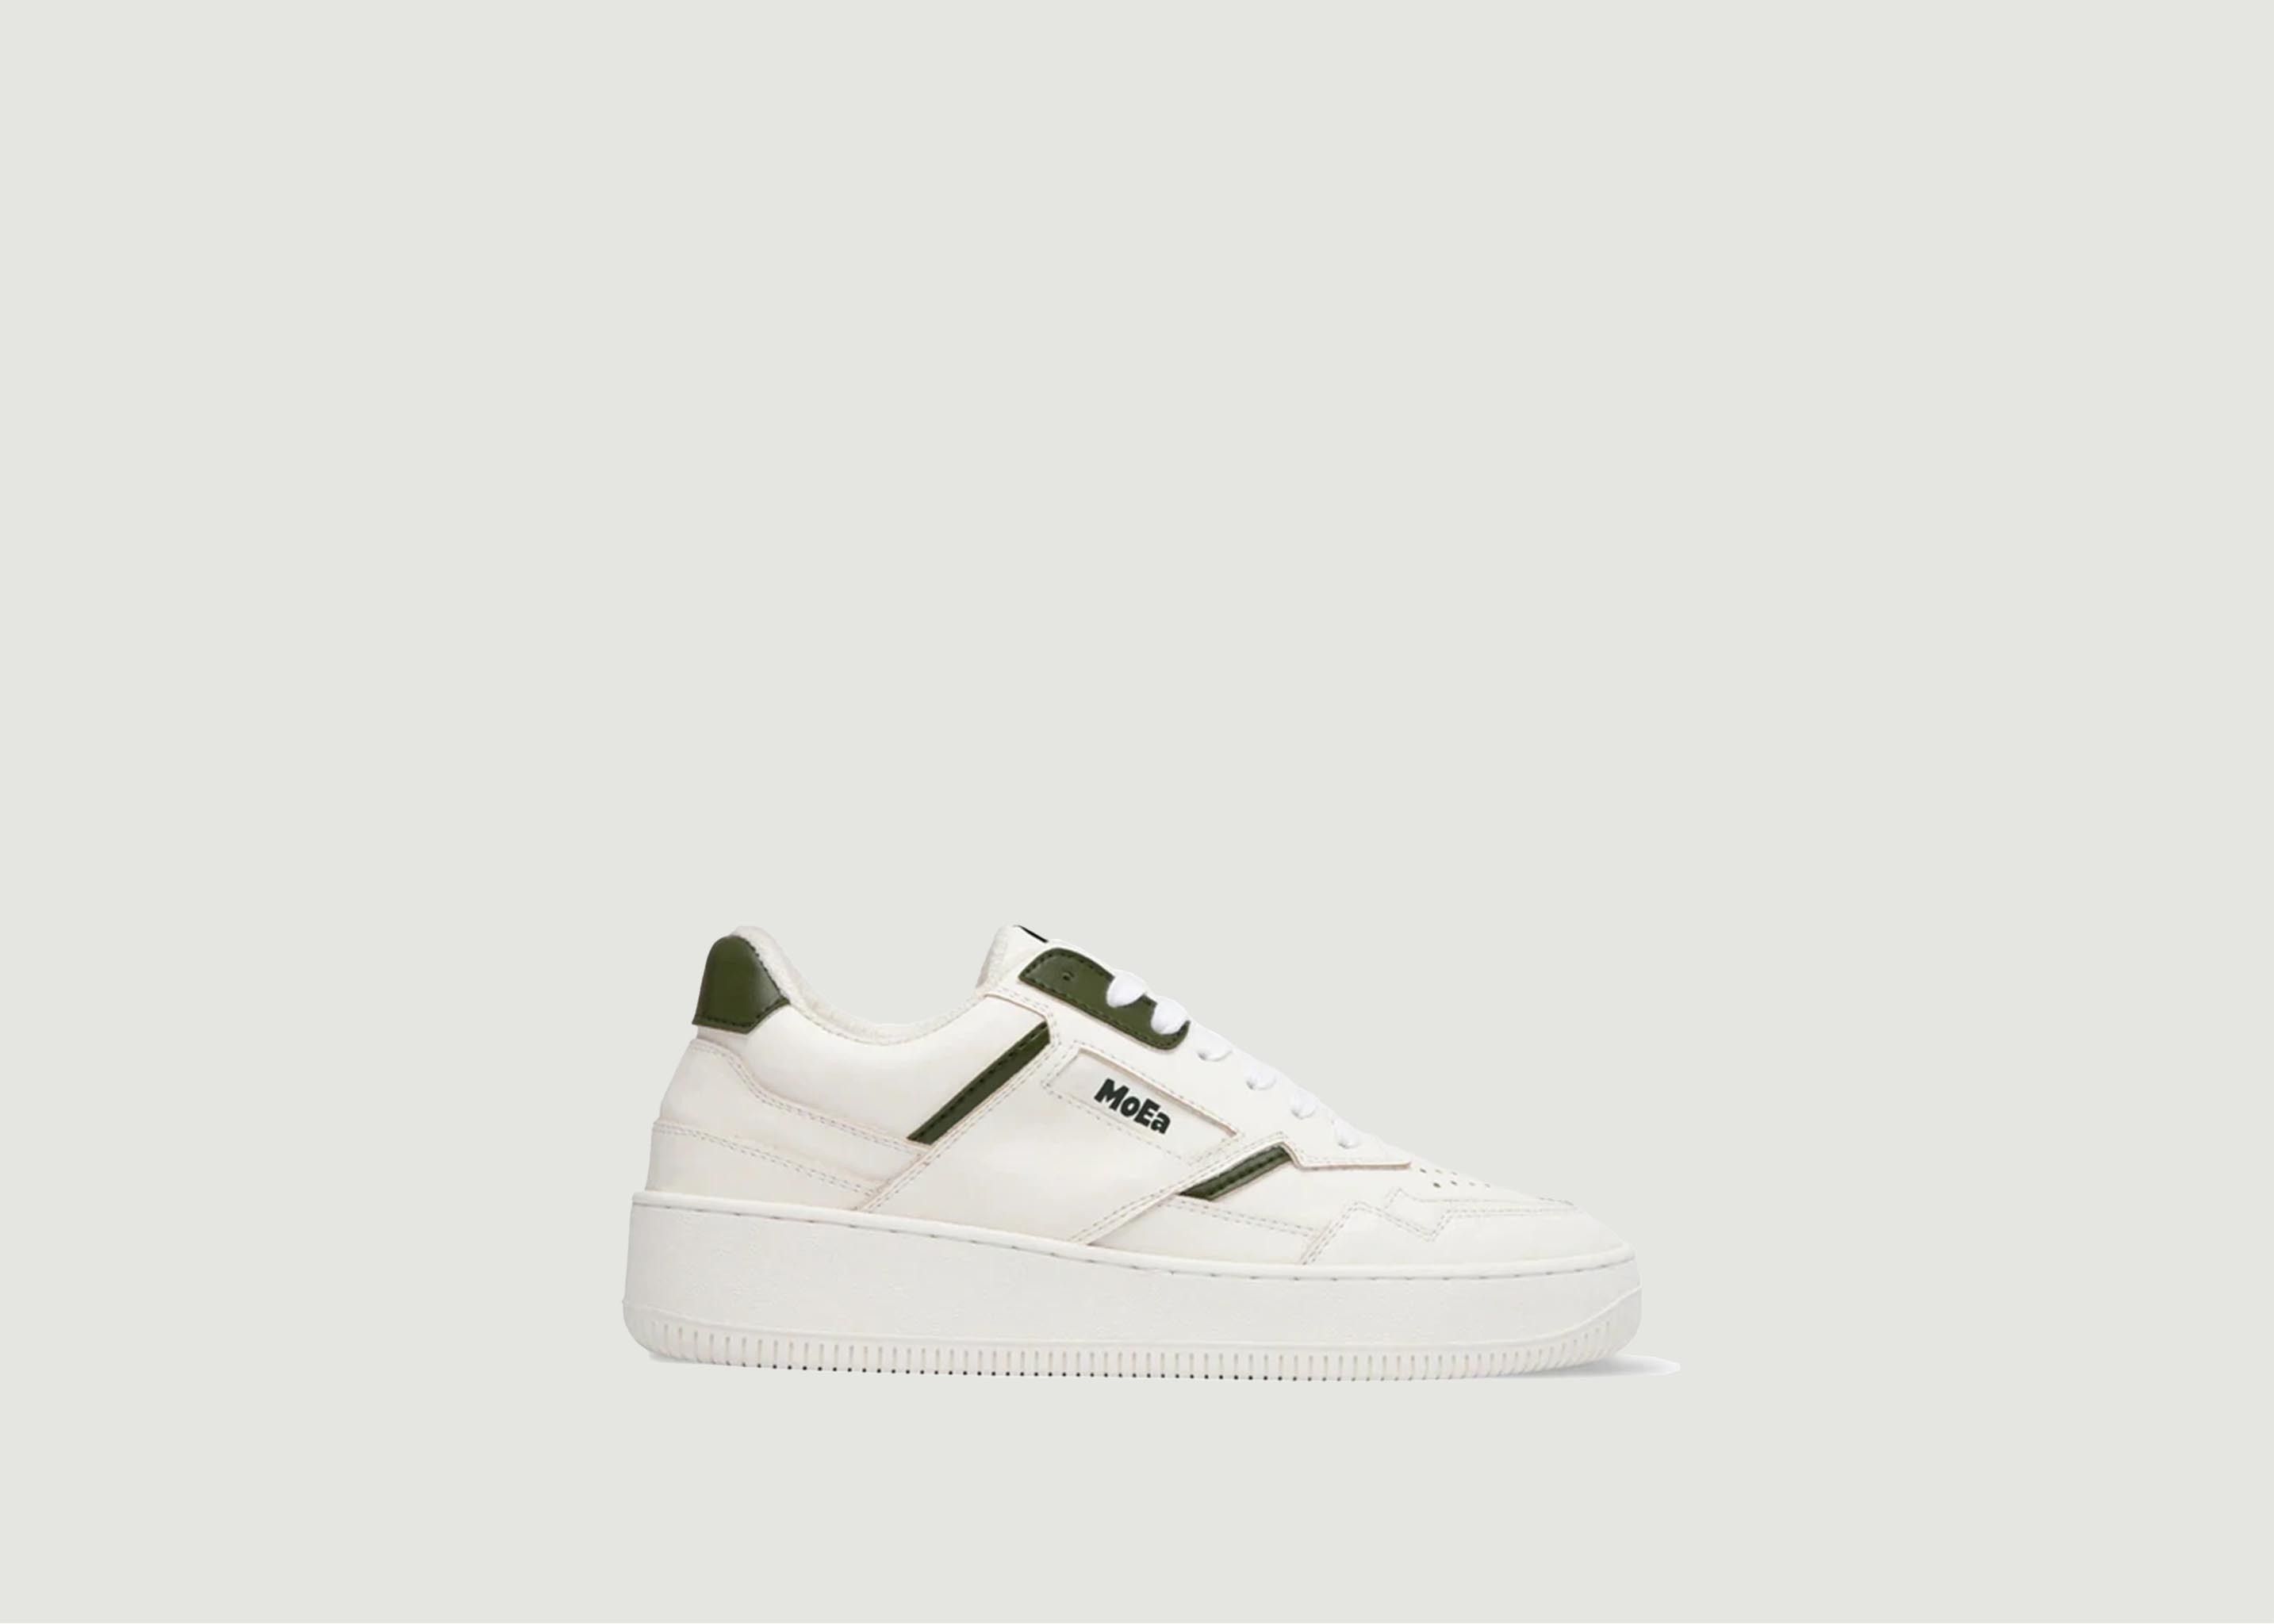 Sneakers Gen1 Cactus vegan  - MoEa